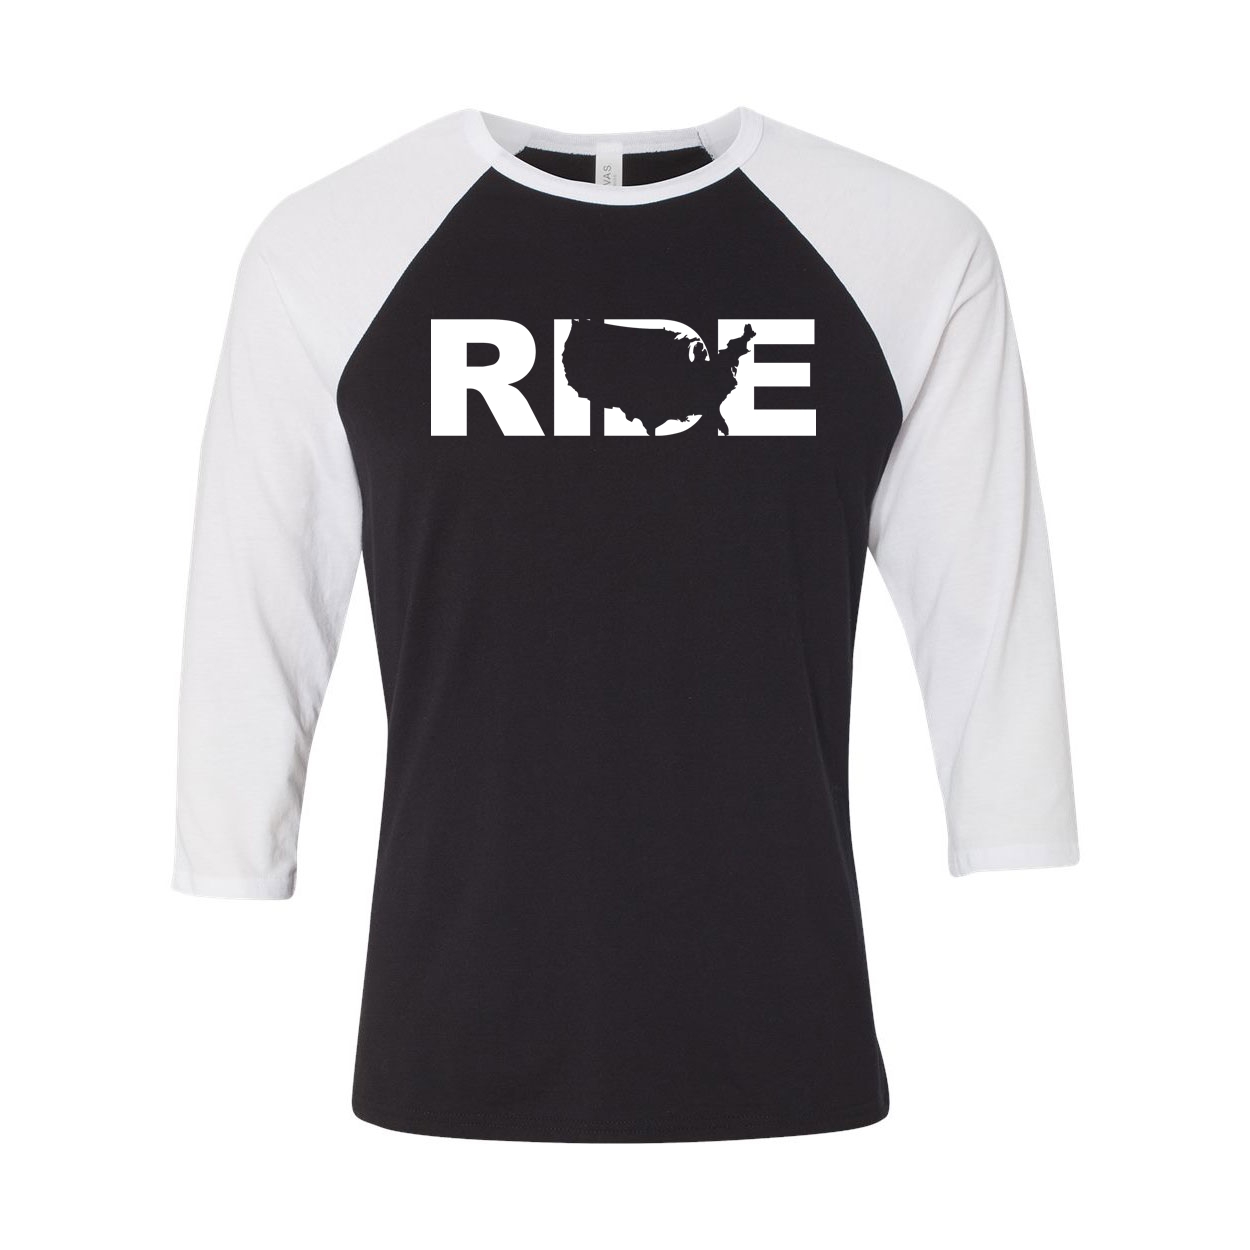 Ride United States Classic Raglan Shirt Black/White (White Logo)